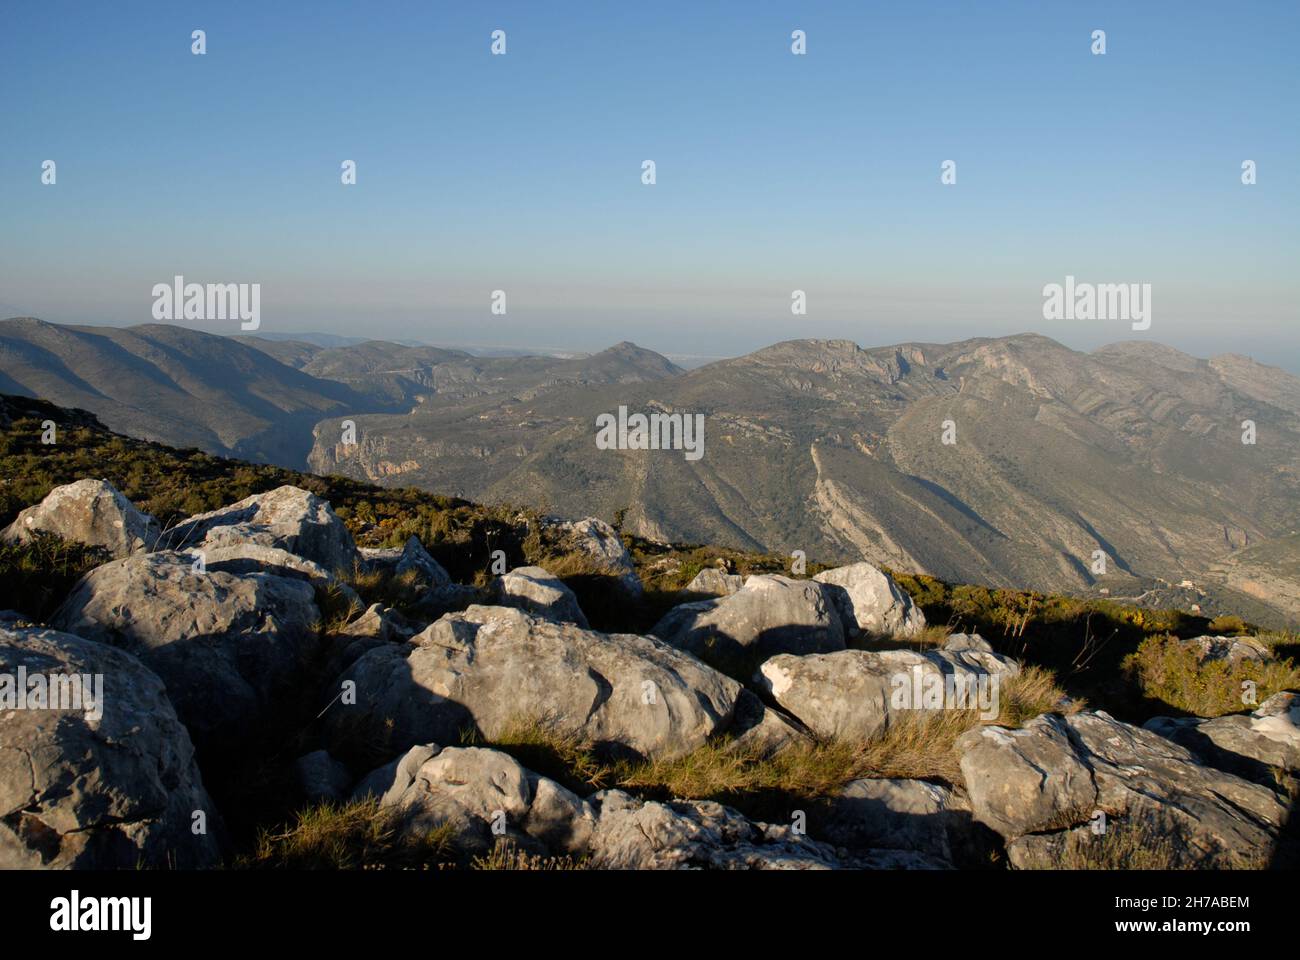 Vue du sommet de Cavall Verd près de Benimaurell dans le Vall de Laguar, aux montagnes lointaines et à la côte méditerranéenne au-delà, province d'Alicante, Espagne Banque D'Images